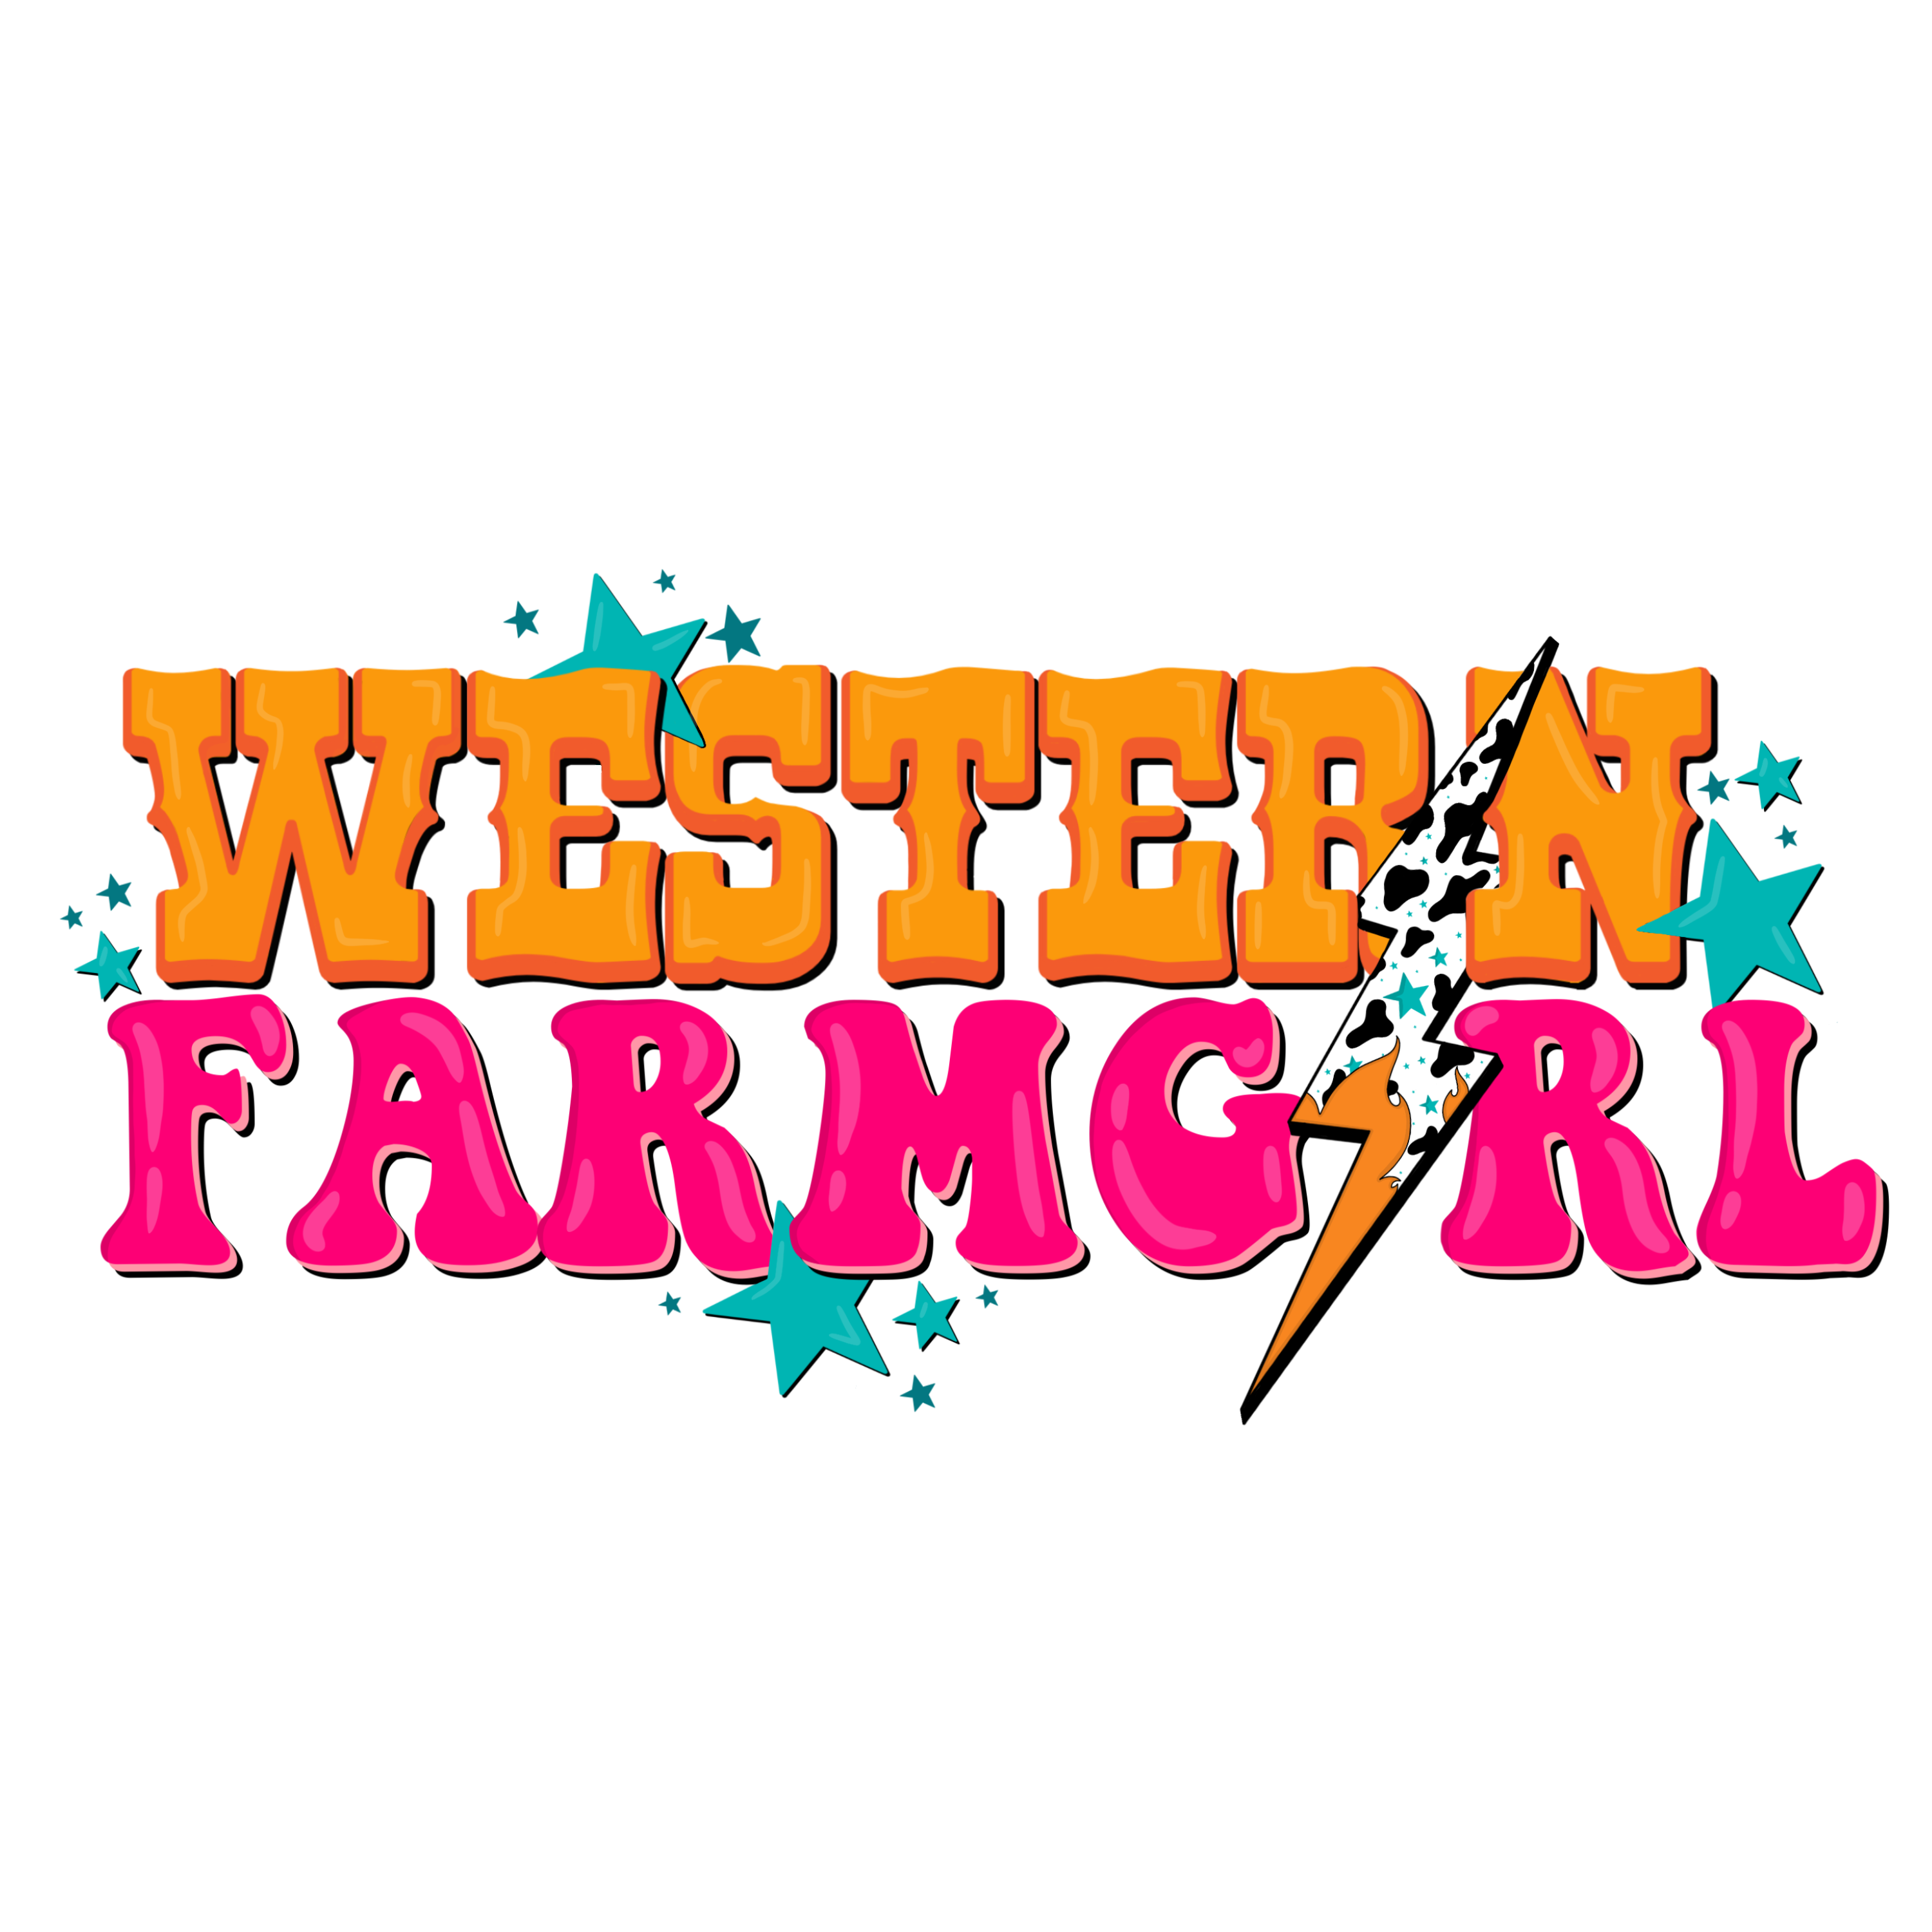 The Western Farmgirl